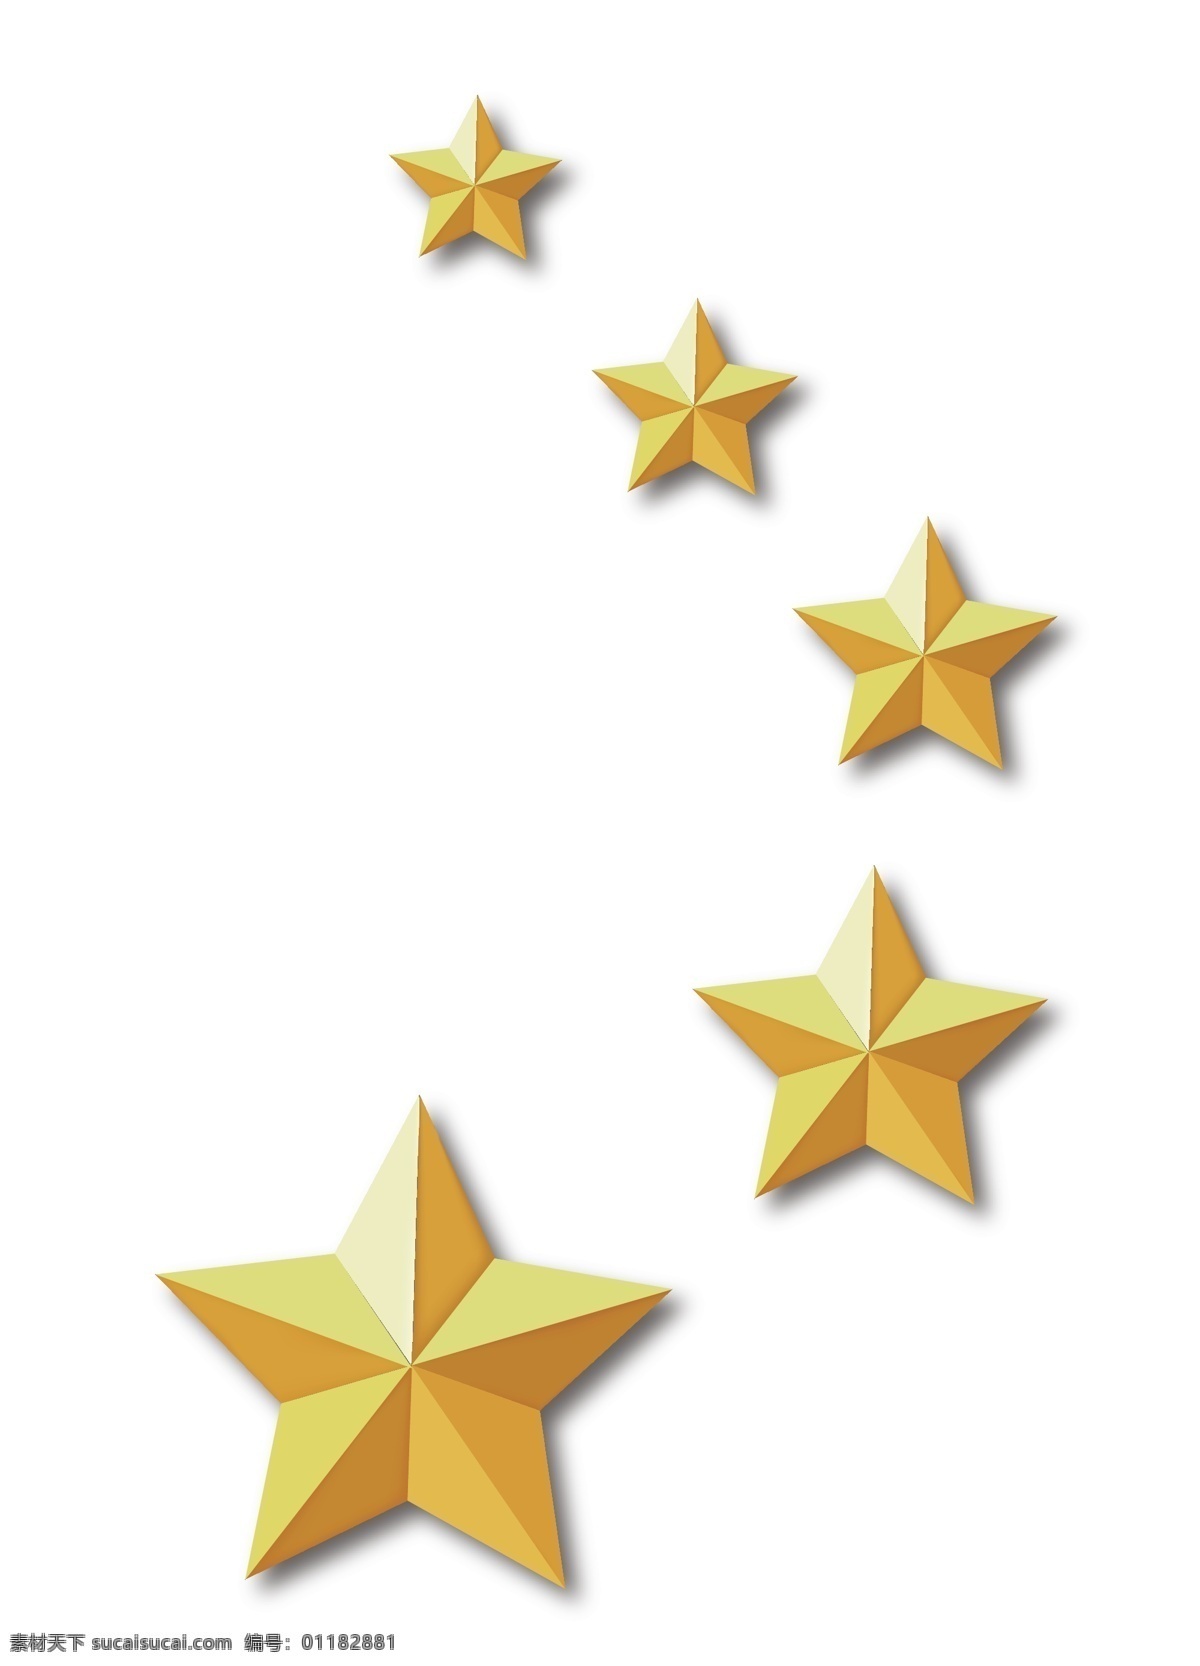 五星 金色五角星 五角星素材 免抠五角星 红旗五角星 星星 红星 金星 星星图案 一闪一闪 装饰 星星装饰 分层 矢量星星 矢量 炫彩 创意图 五角星小元素 简约图案 标志图标 logo 图标 矢量元素